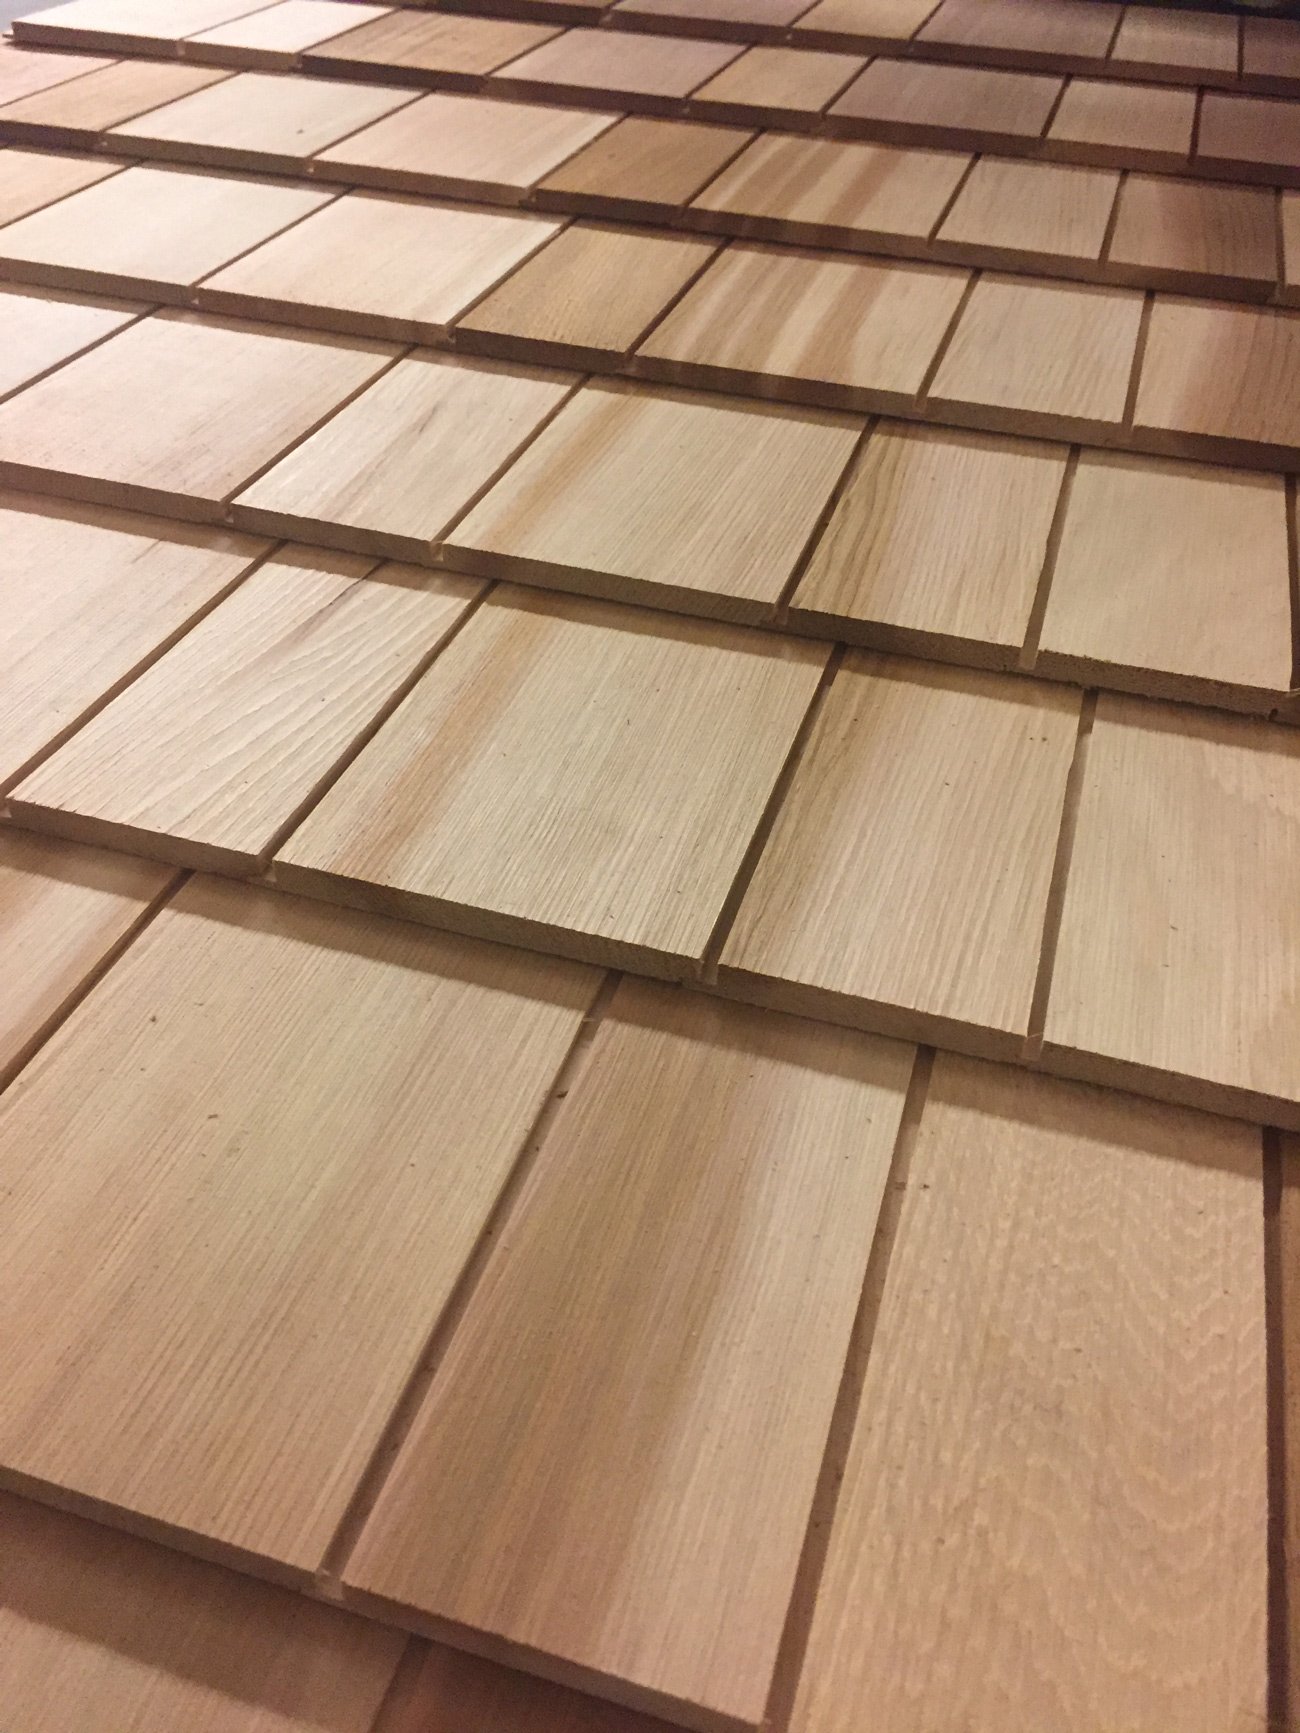 Shingle Panels - Cedar shingle panels - Cedar shingles